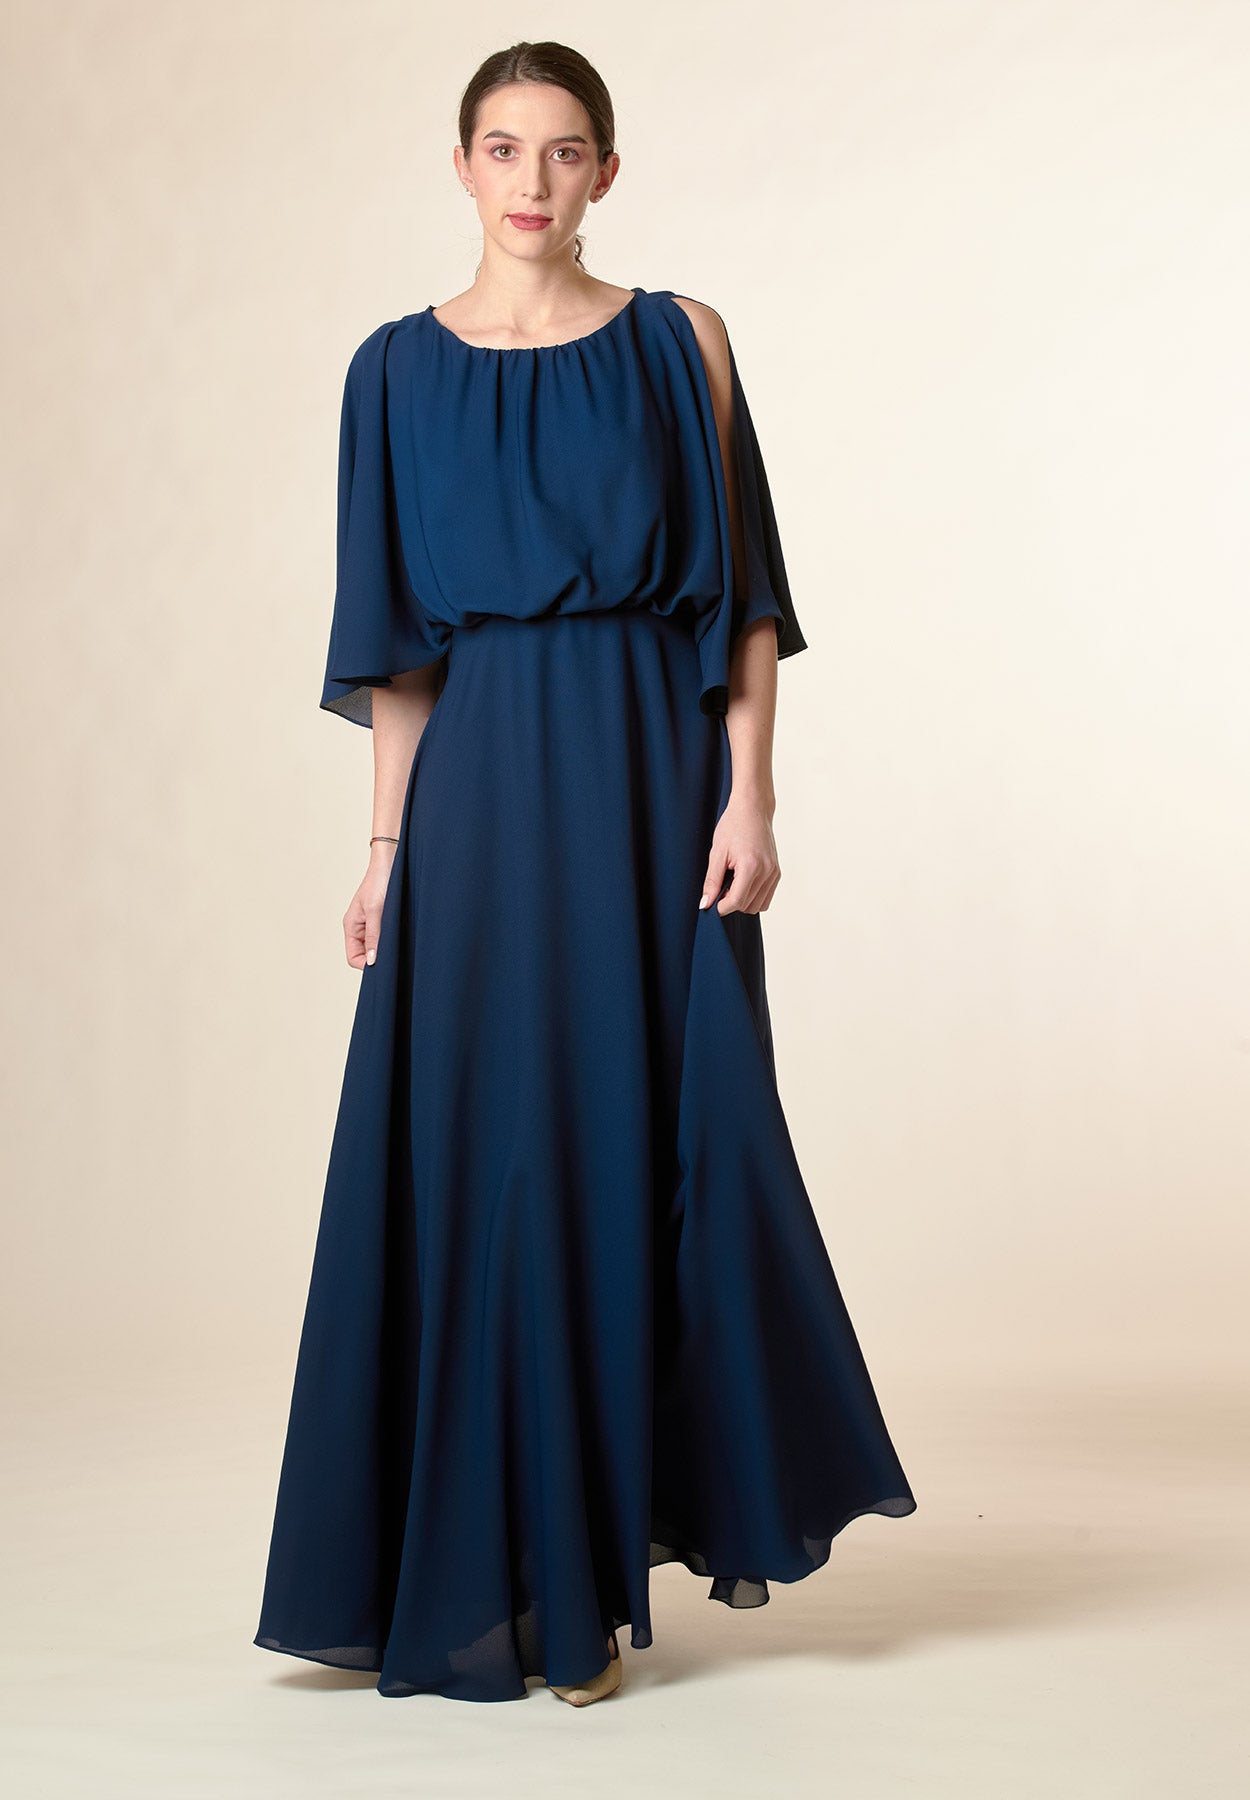 Langes blaues Kleid mit offenen Ärmeln